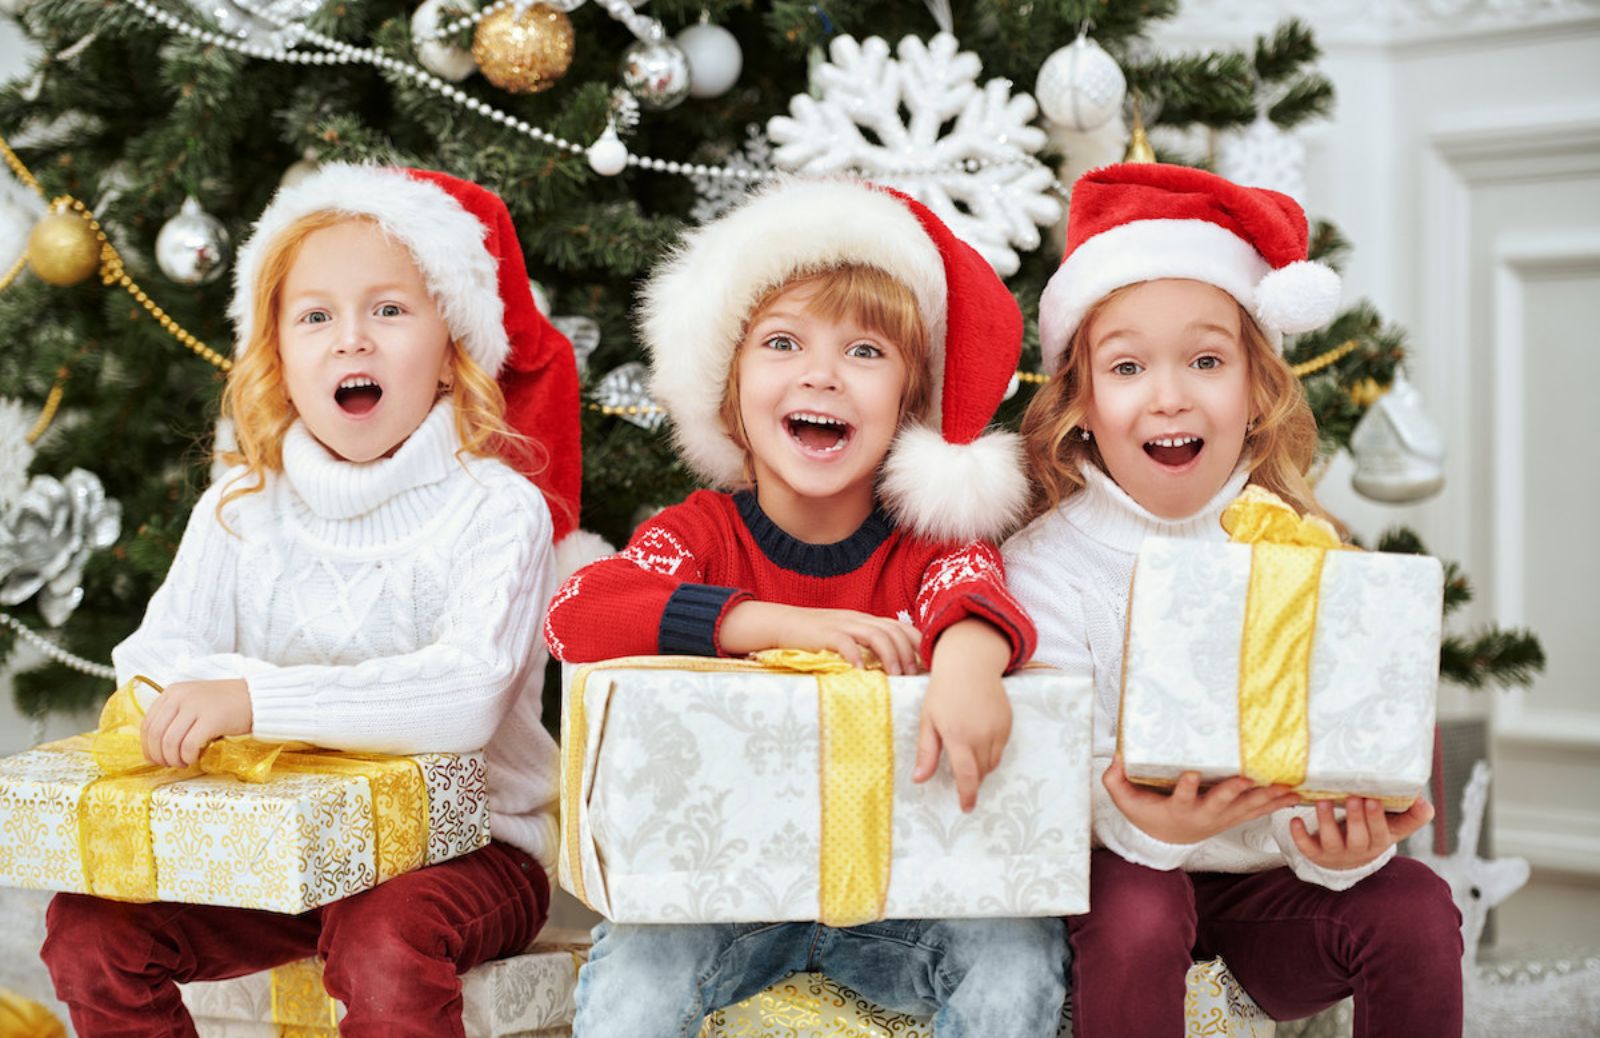 Regali di Natale per bambini da 1 a 12 anni: idee originali ed economiche